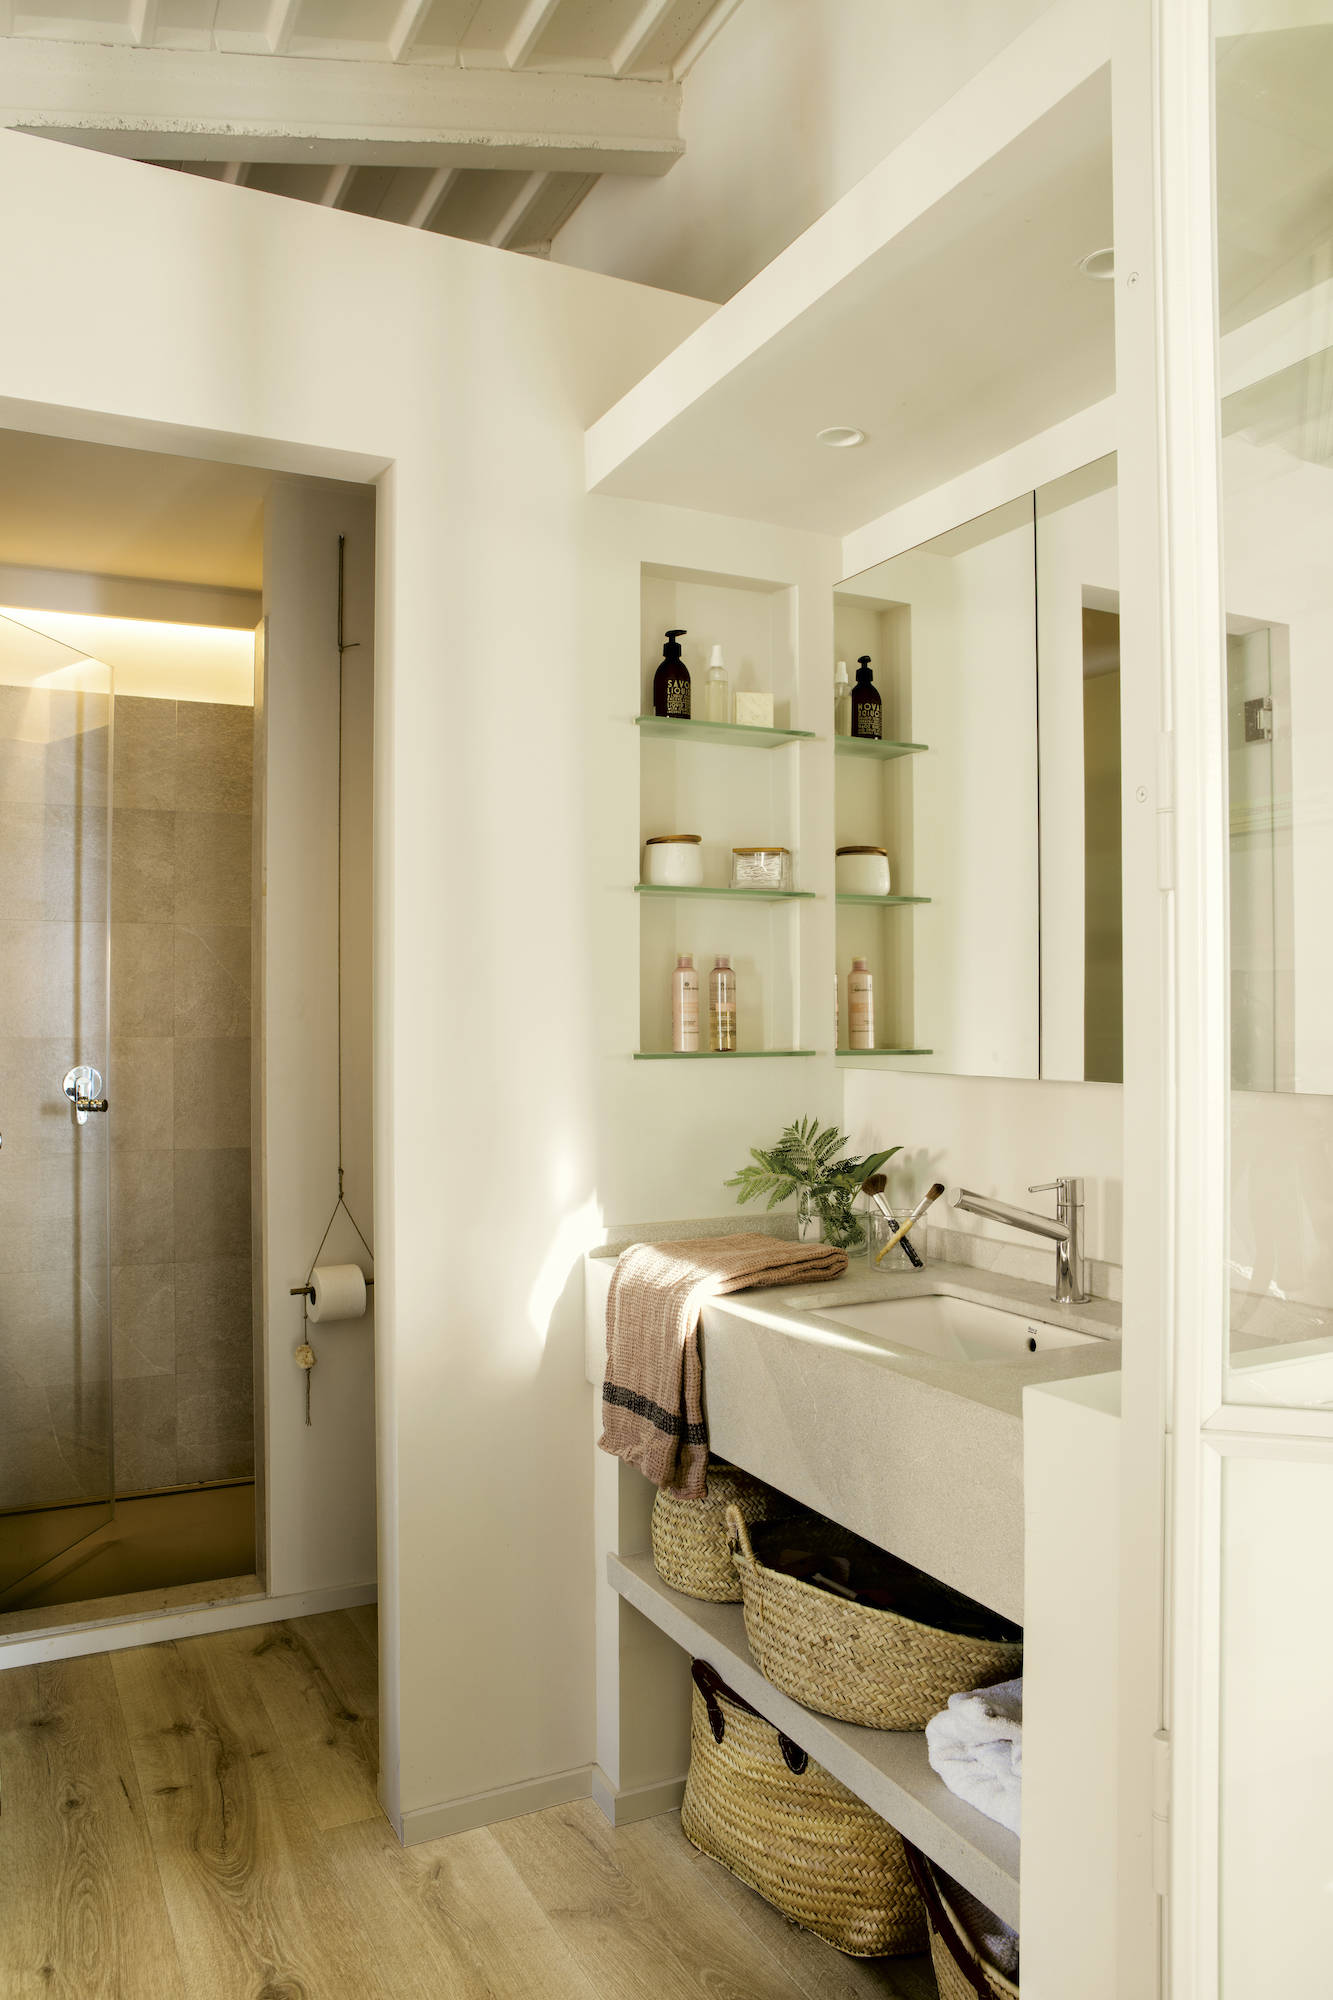 Baño don ducha separados por paredes y puerta de cristal. 